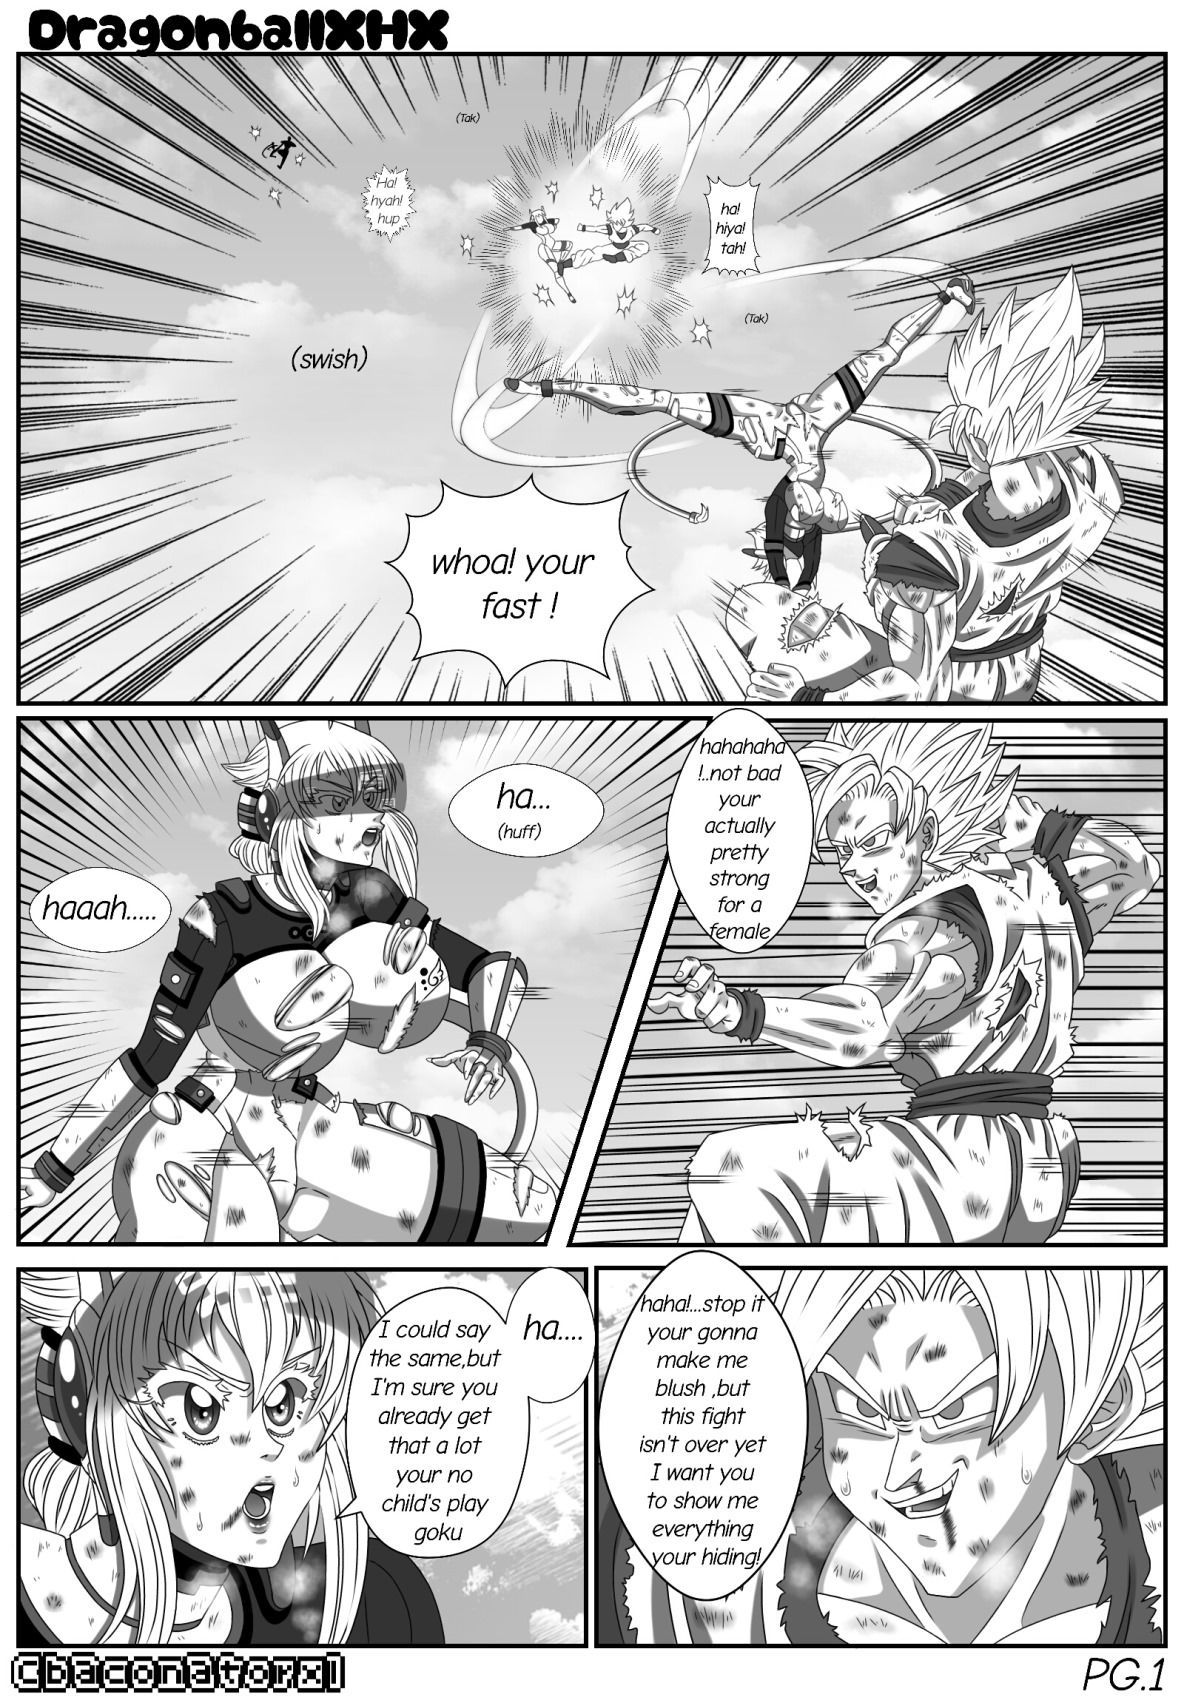 Dragon Ball Z Baconatorxl by XHX page 3